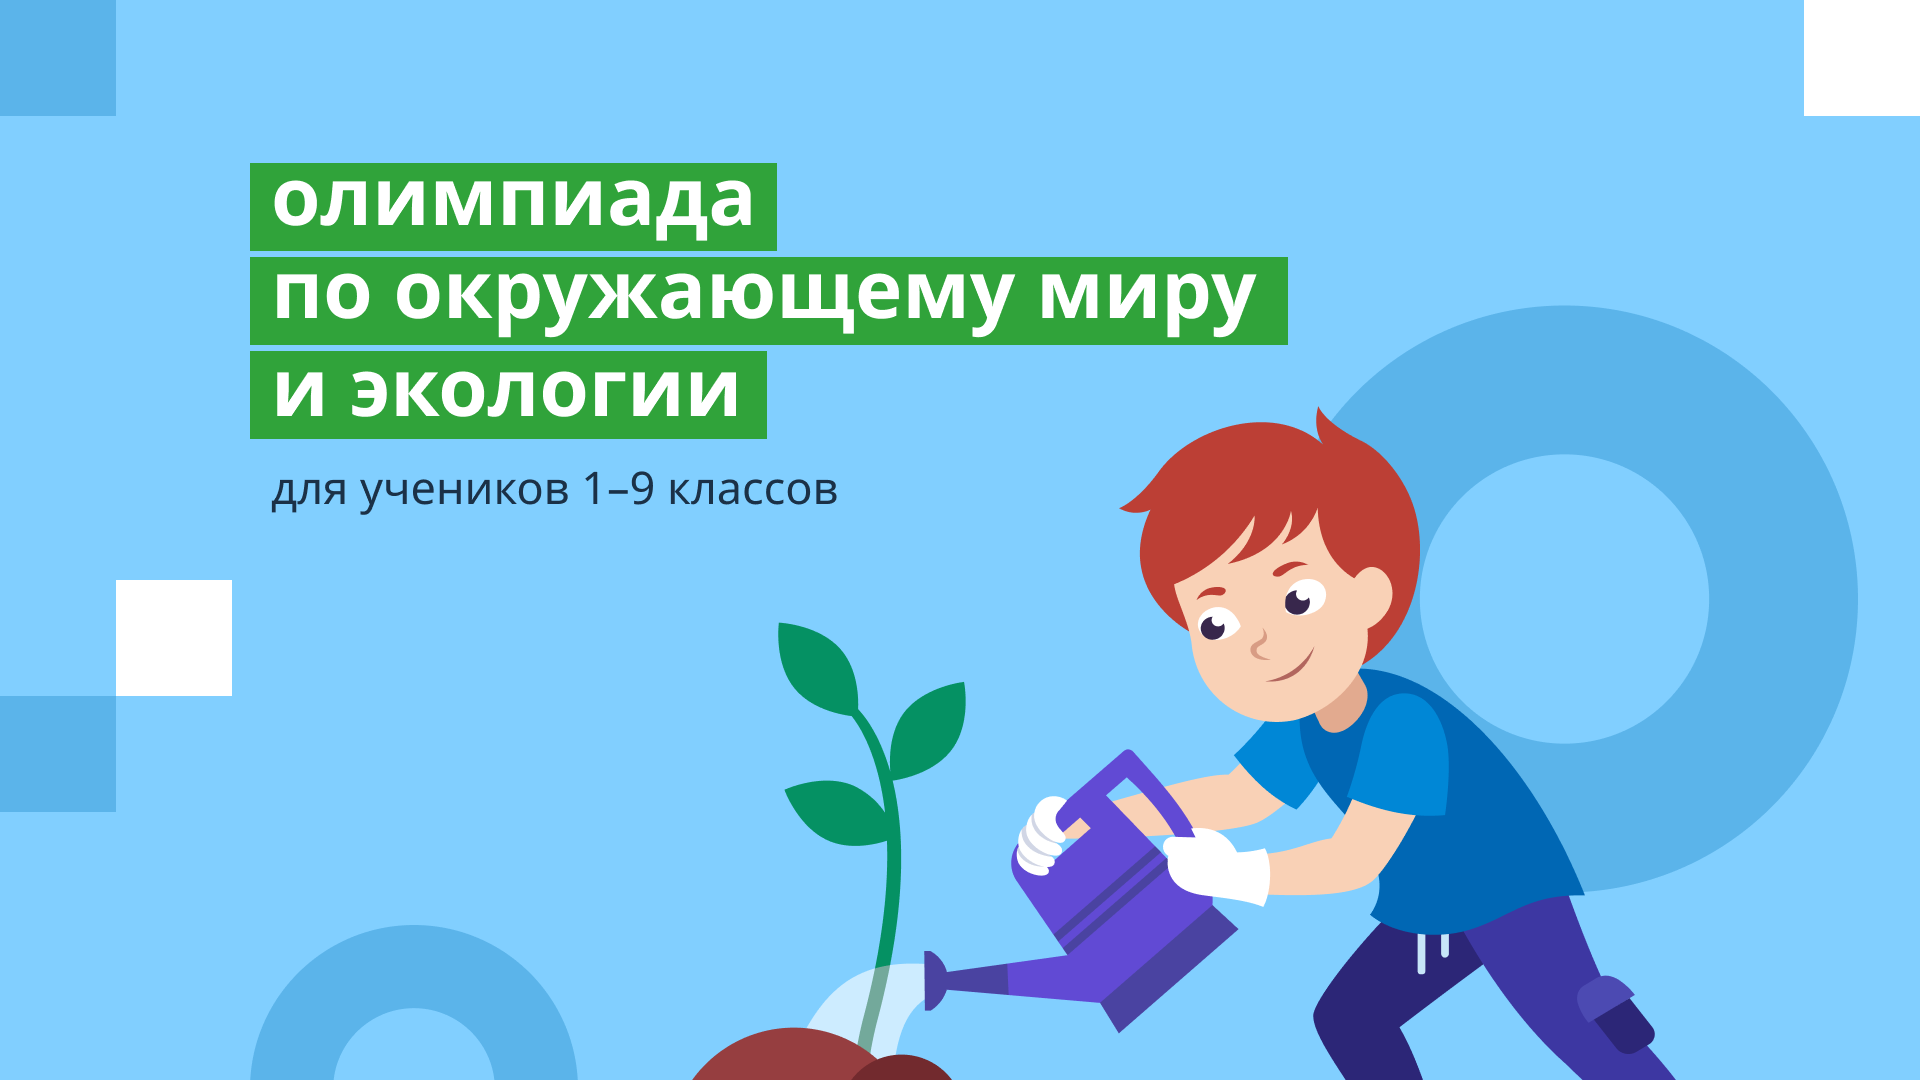 Всероссийская онлайн-олимпиада по окружающему миру и экологии.